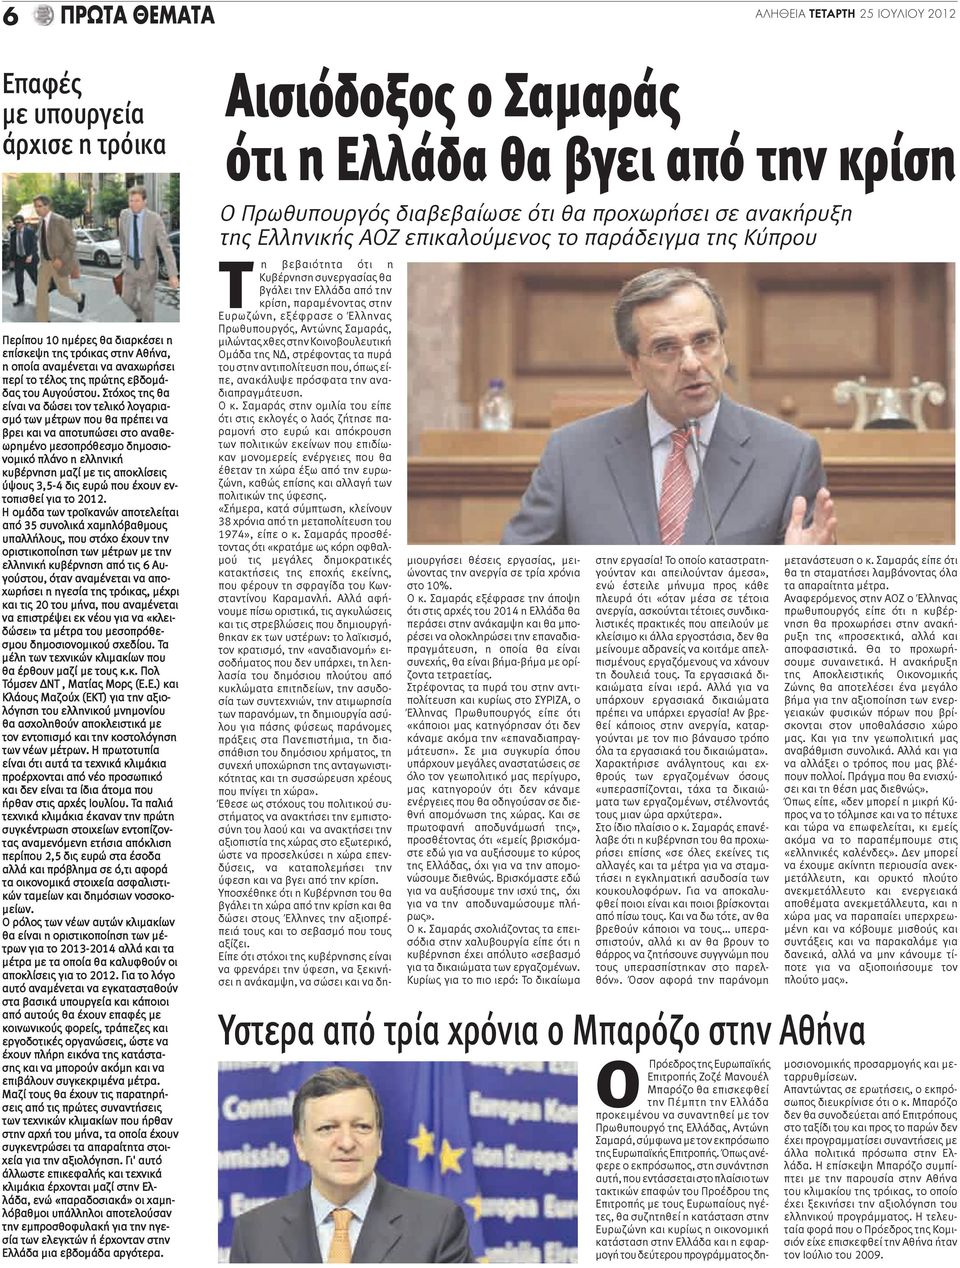 Στόχος της θα είναι να δώσει τον τελικό λογαριασμό των μέτρων που θα πρέπει να βρει και να αποτυπώσει στο αναθεωρημένο μεσοπρόθεσμο δημοσιονομικό πλάνο η ελληνική κυβέρνηση μαζί με τις αποκλίσεις